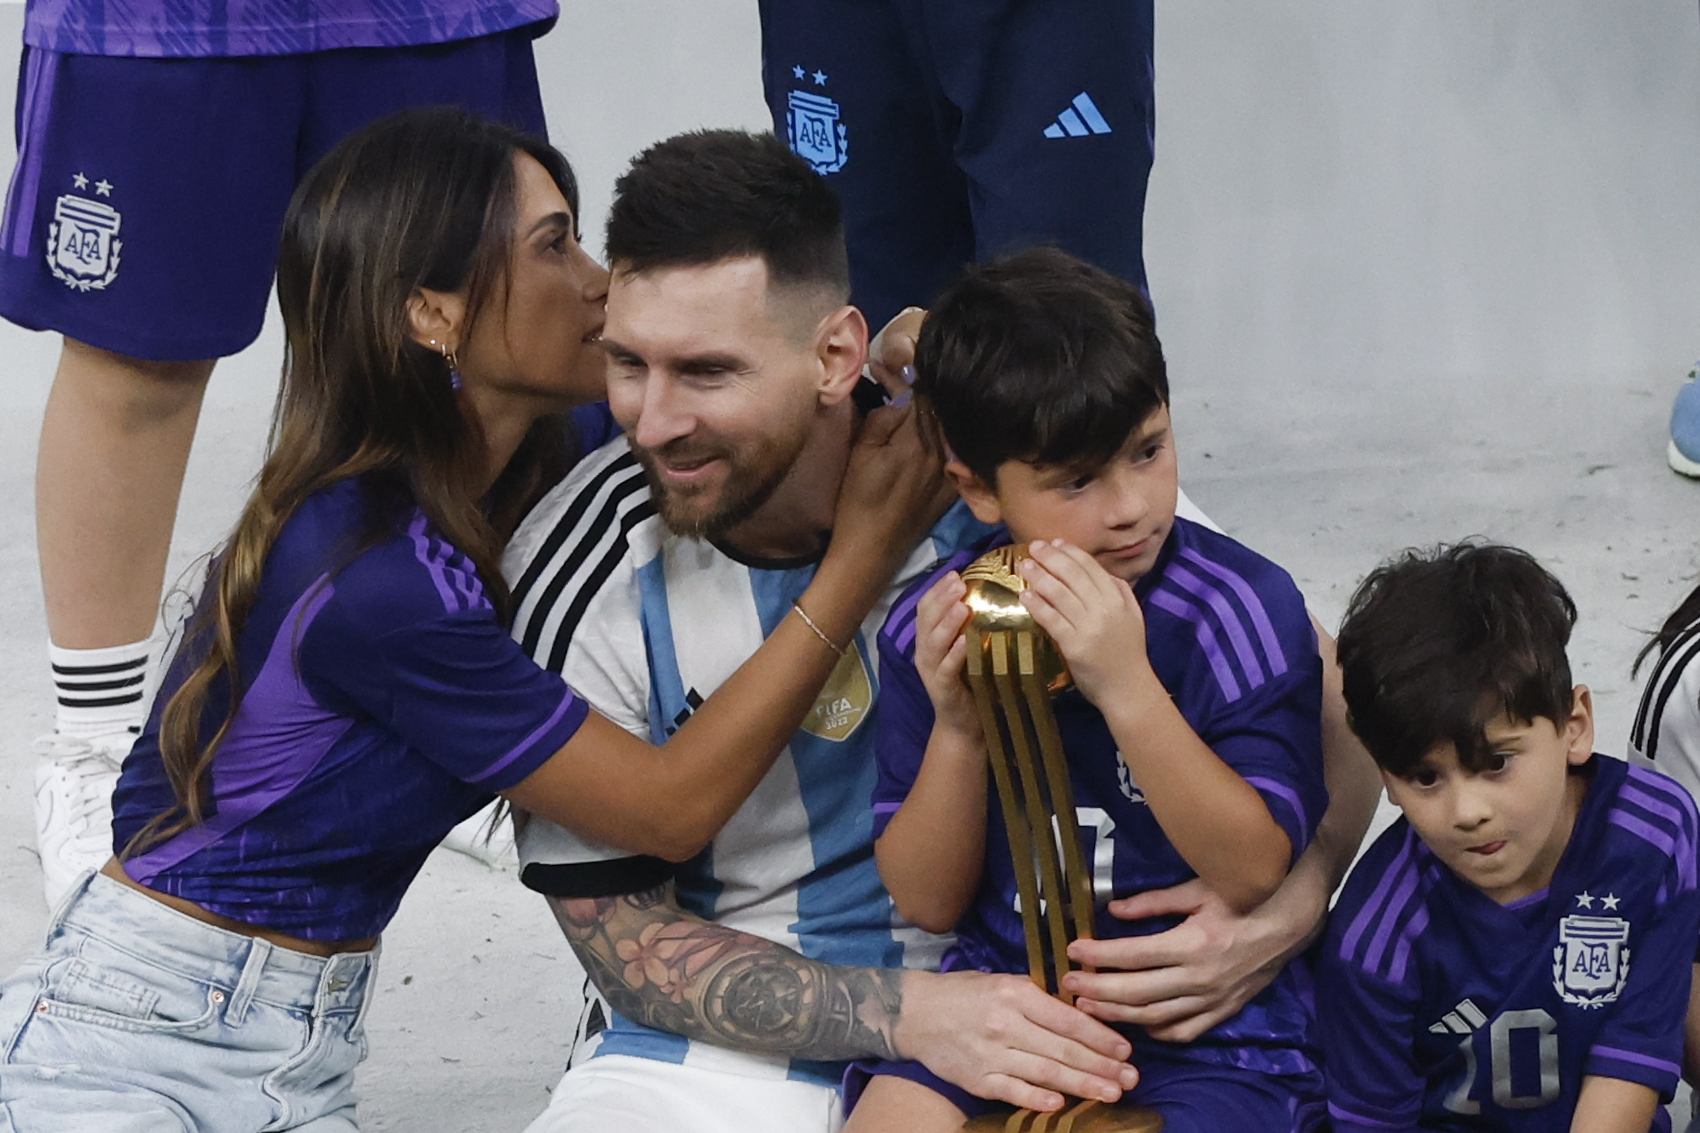 “Estamos todos muy felices”: Las palabras de bienvenida a Argentina para Messi y su familia (VIDEO)